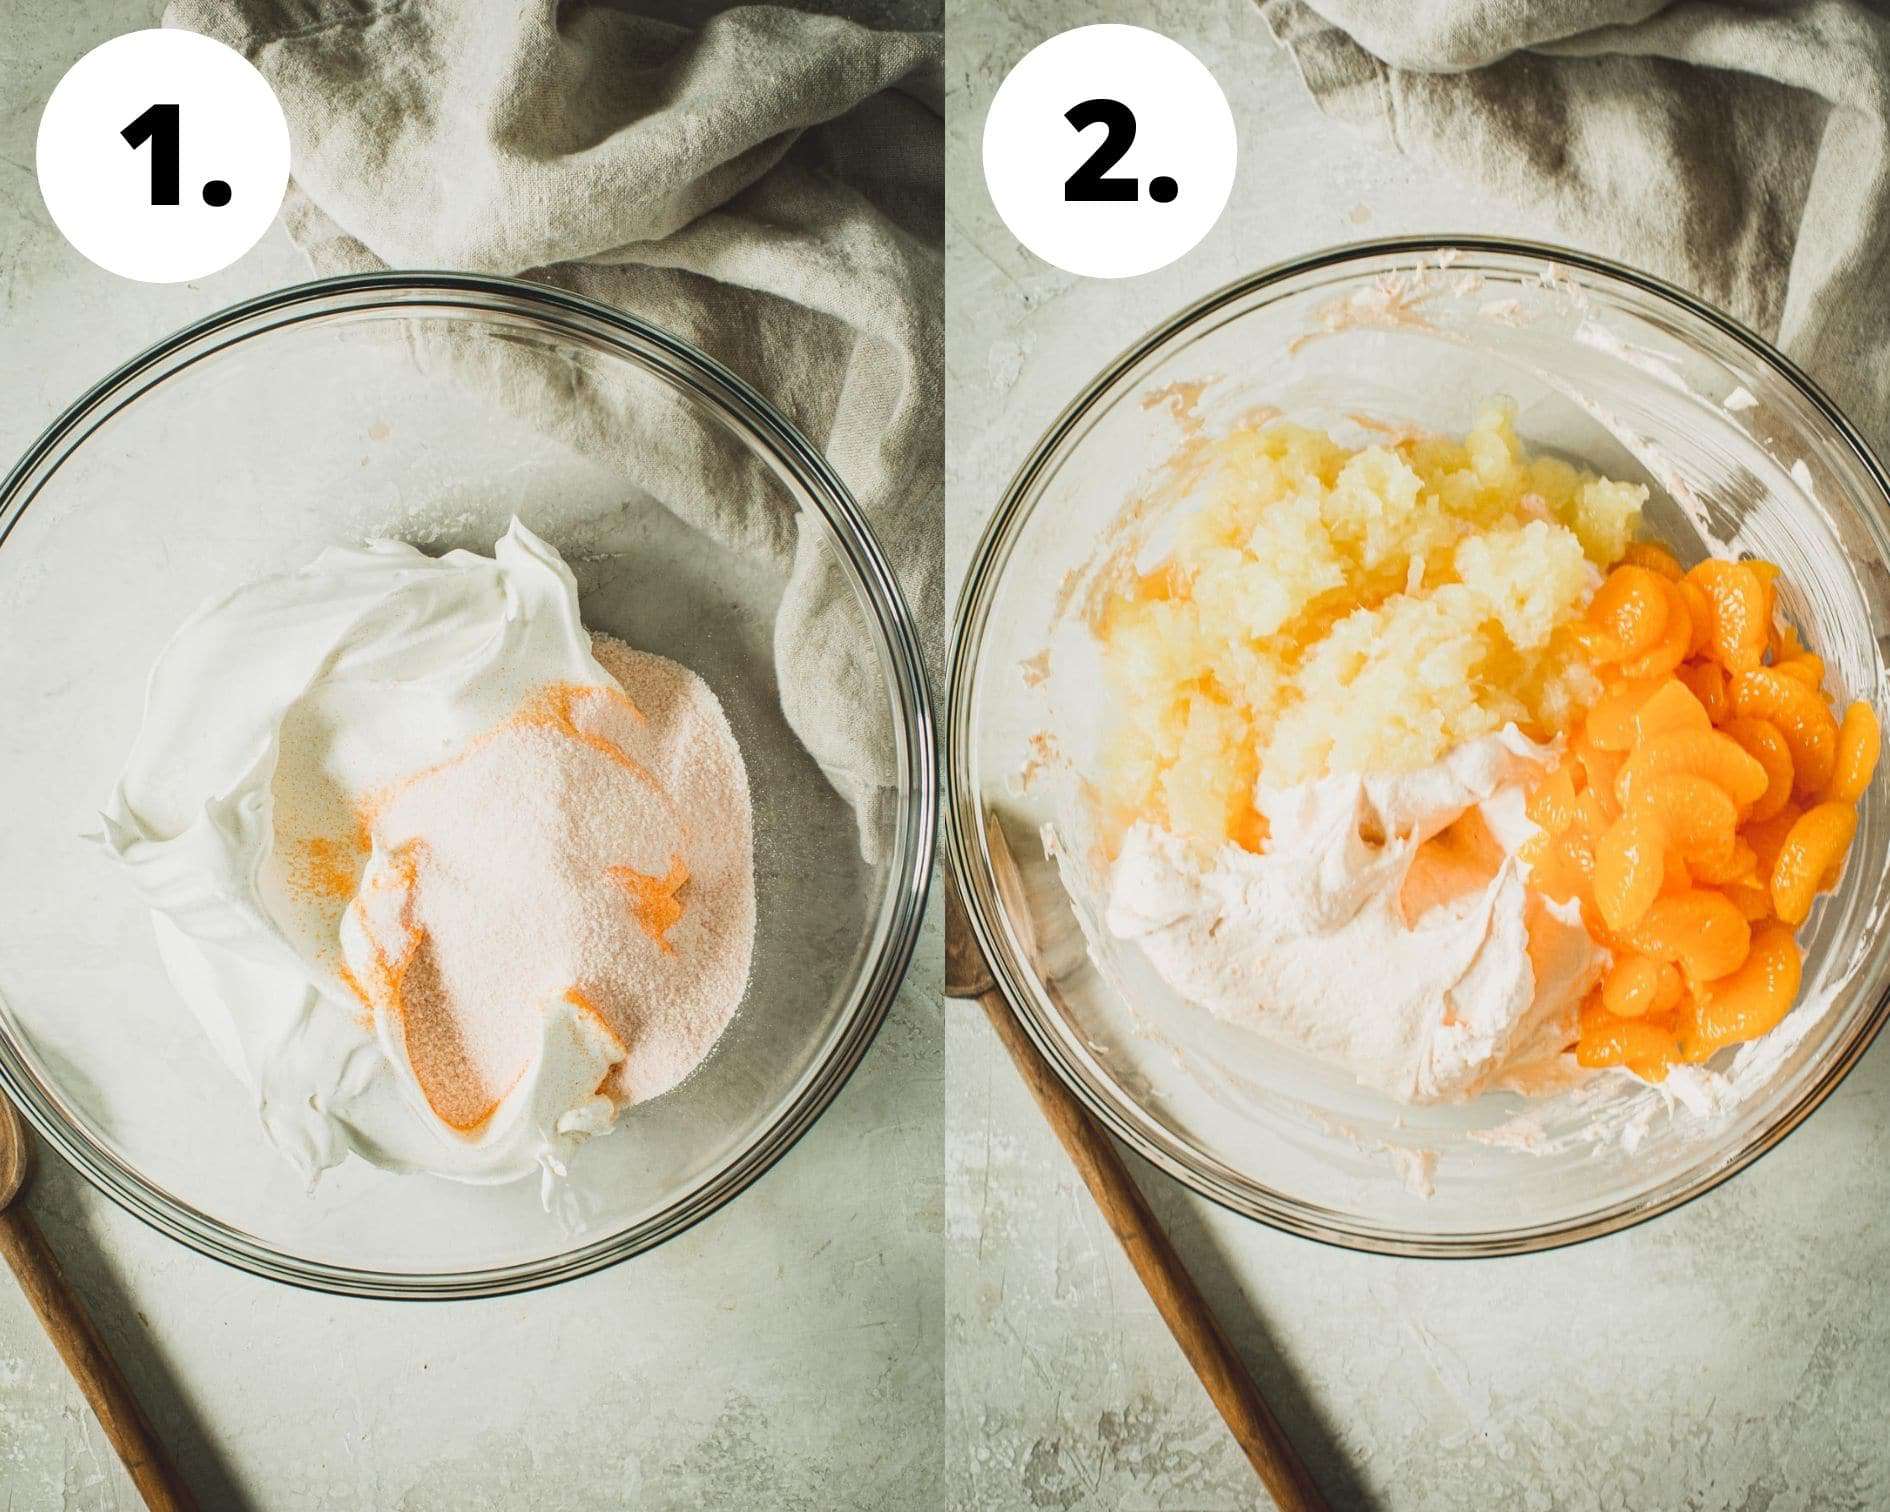 Orange jello salad process steps 1 and 2.